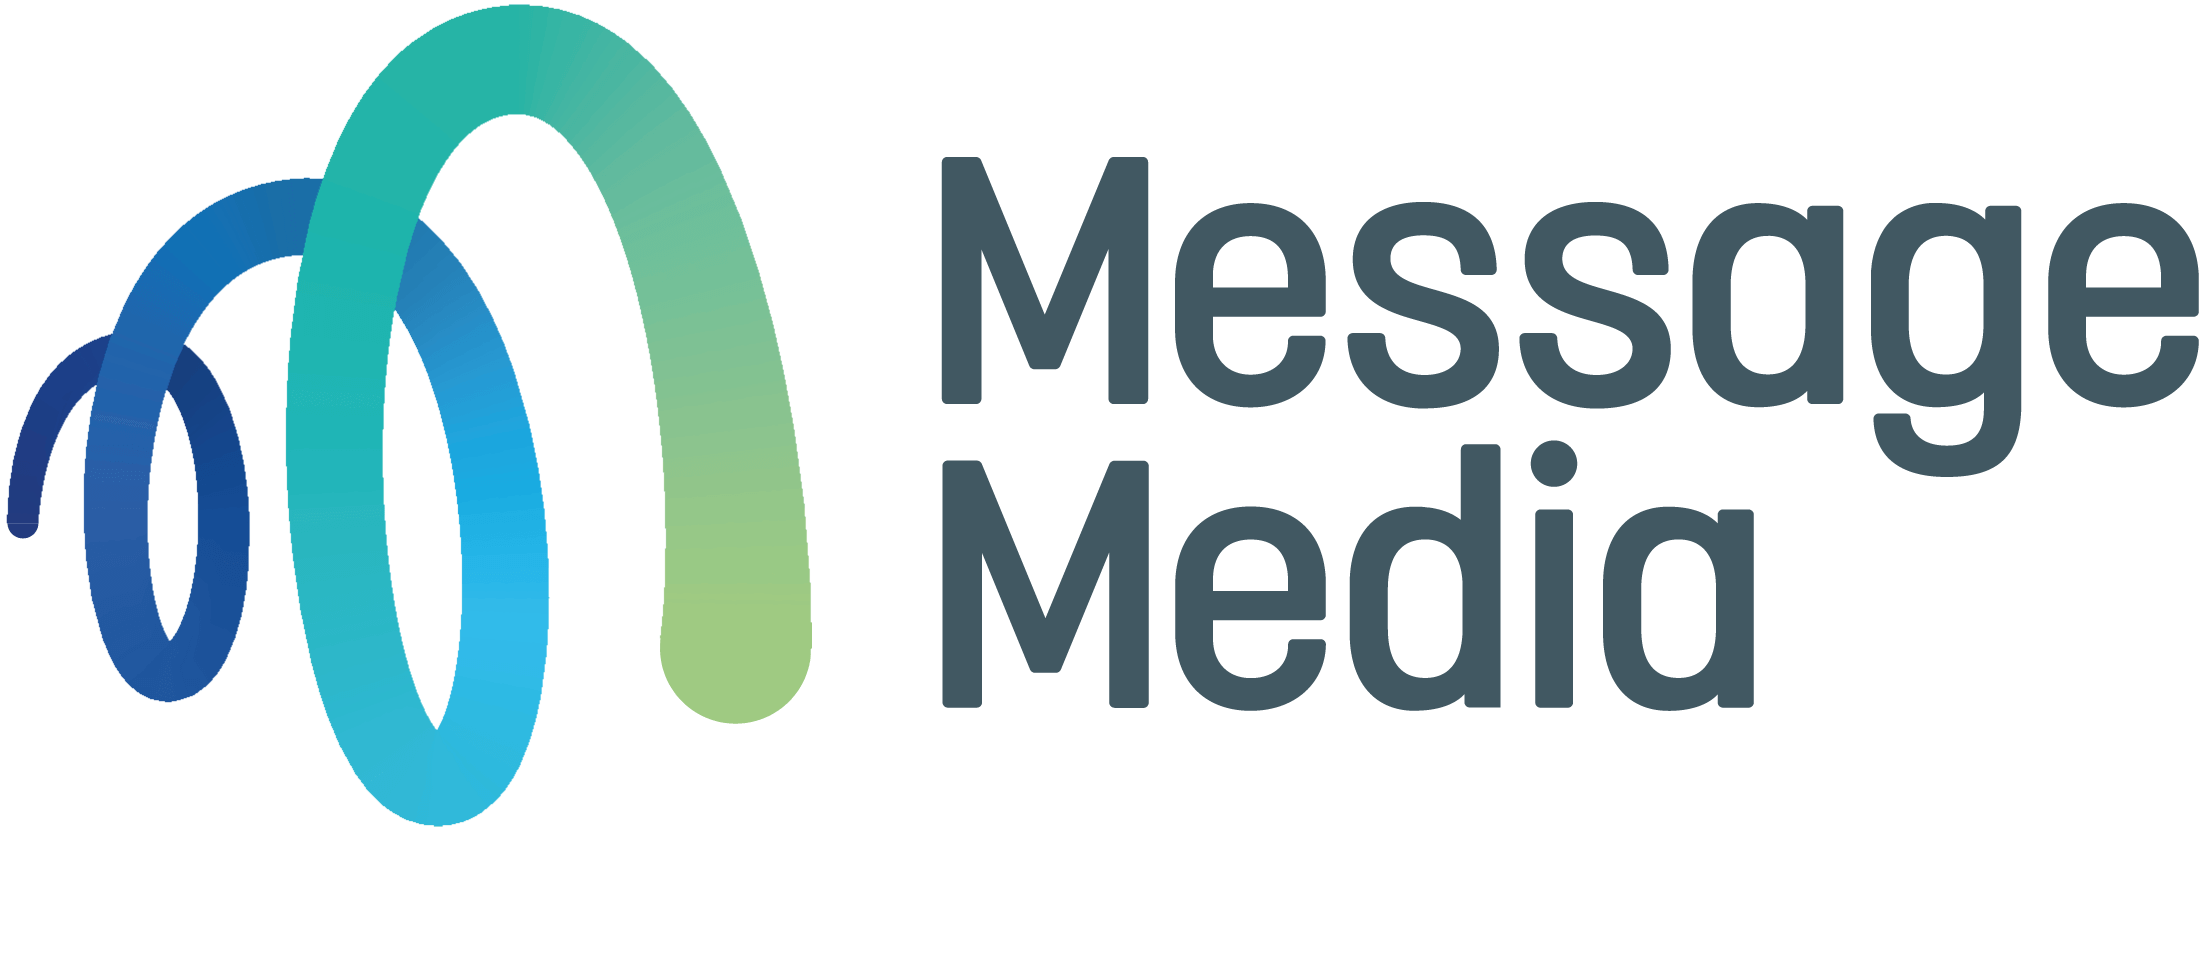 Message Media Logo